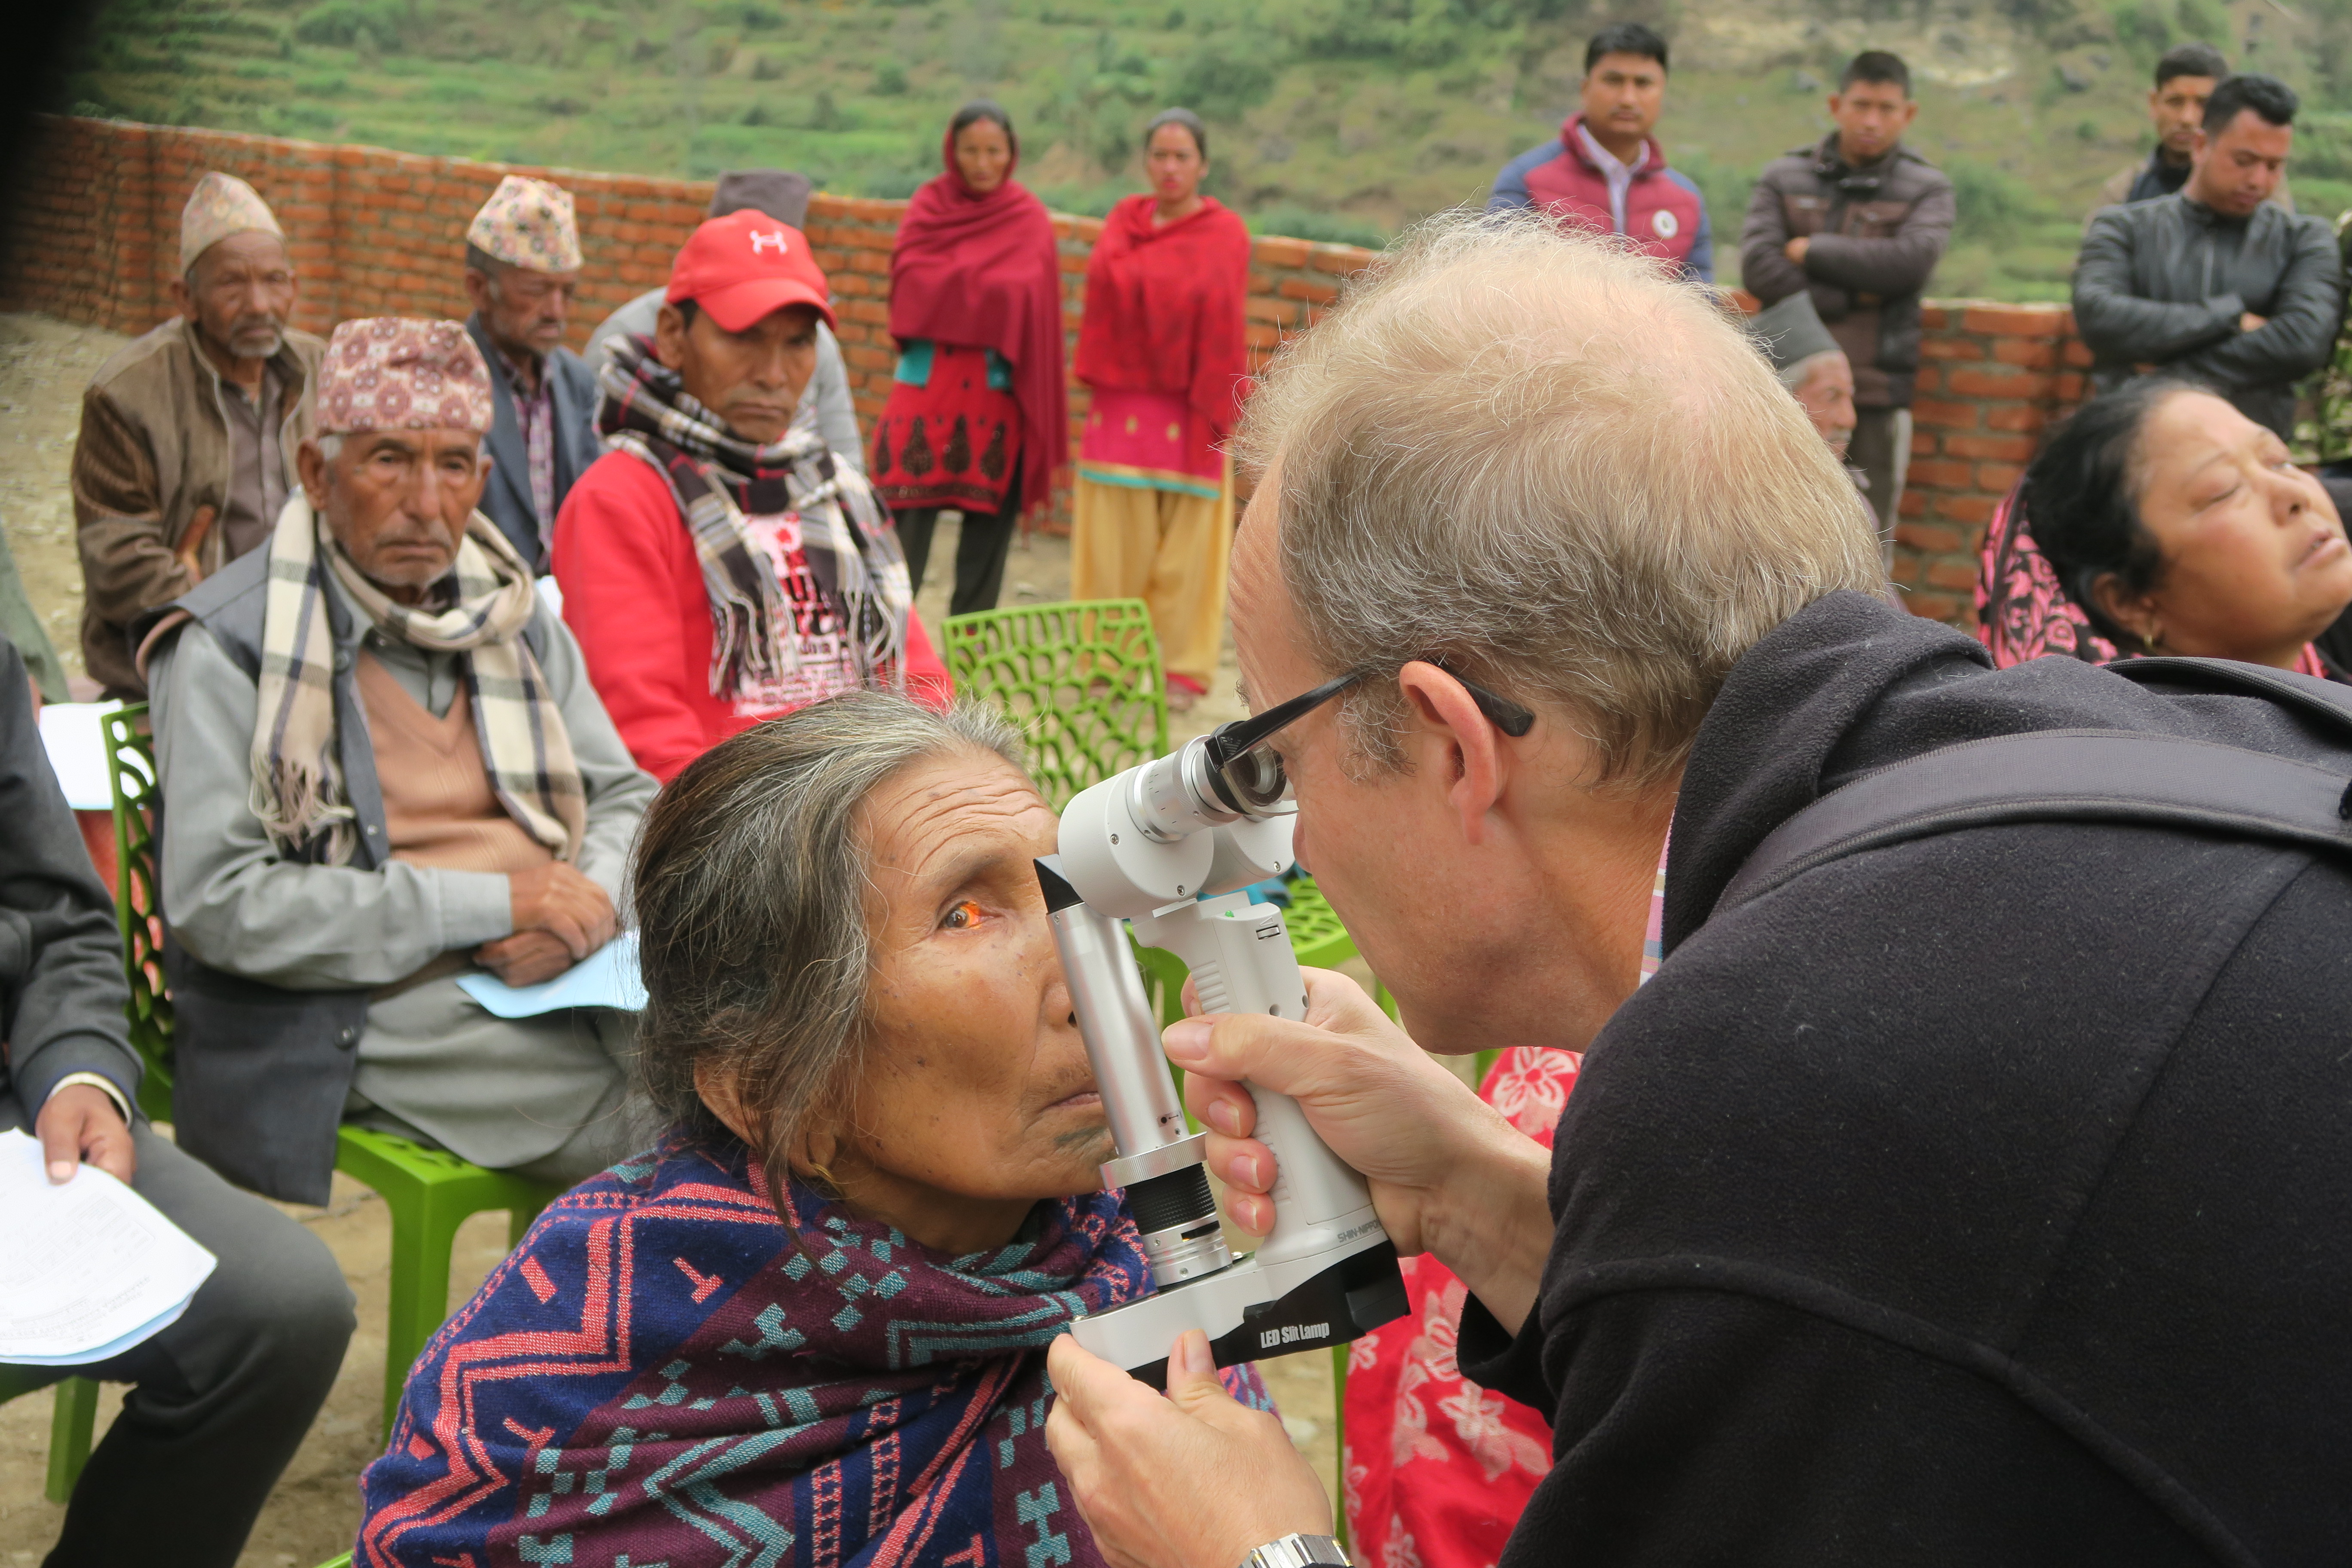 18.10. – 20.10.2019: Dr. Reto Graemiger, Vize-Präsident im Stiftungsrat, berichtet vom Augencamp in Palung, Nepal